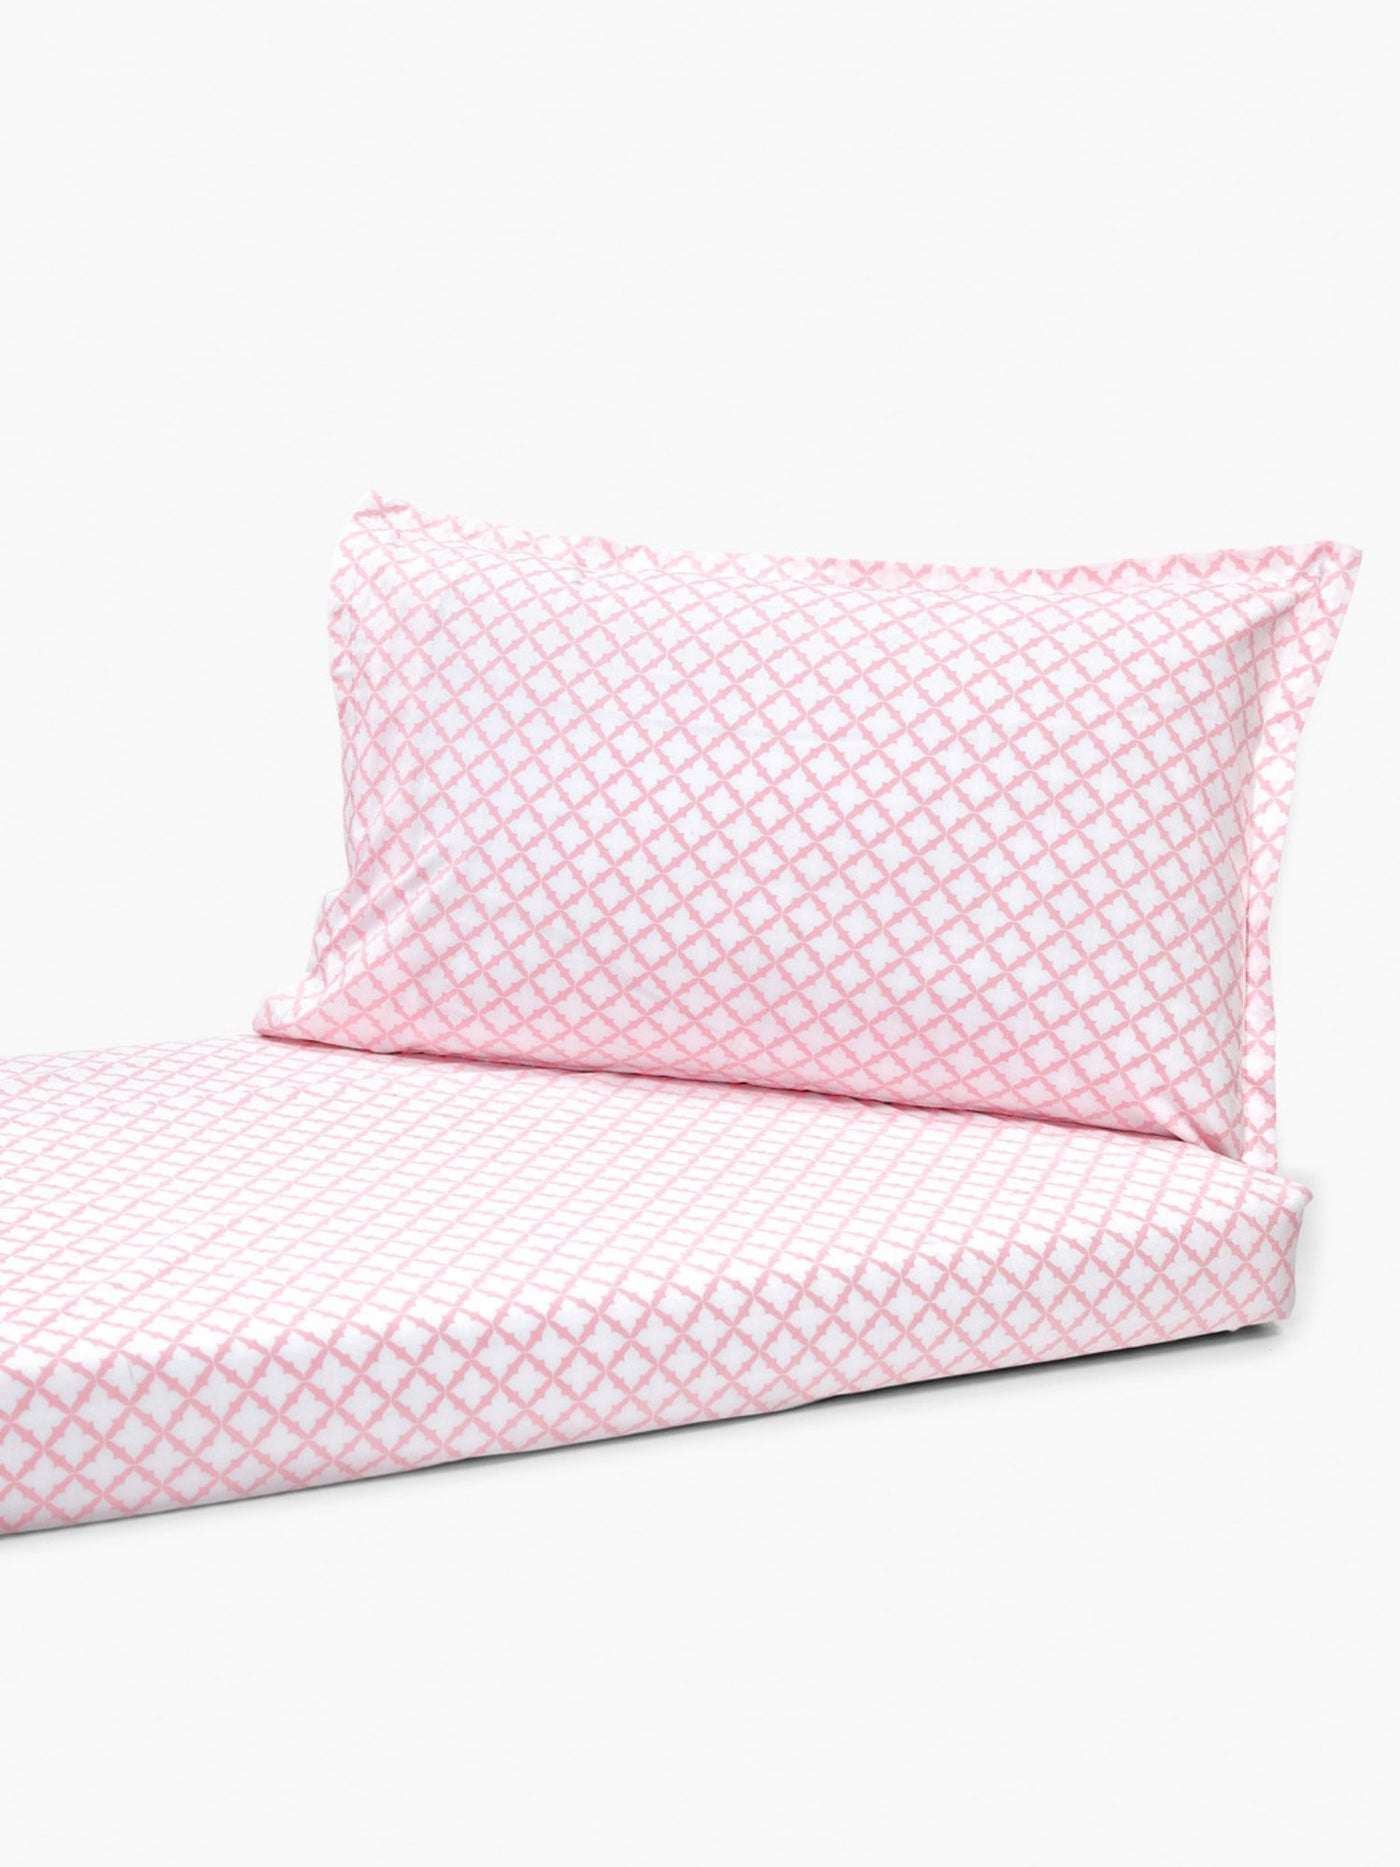 Jaal (Pink) Bedsheet